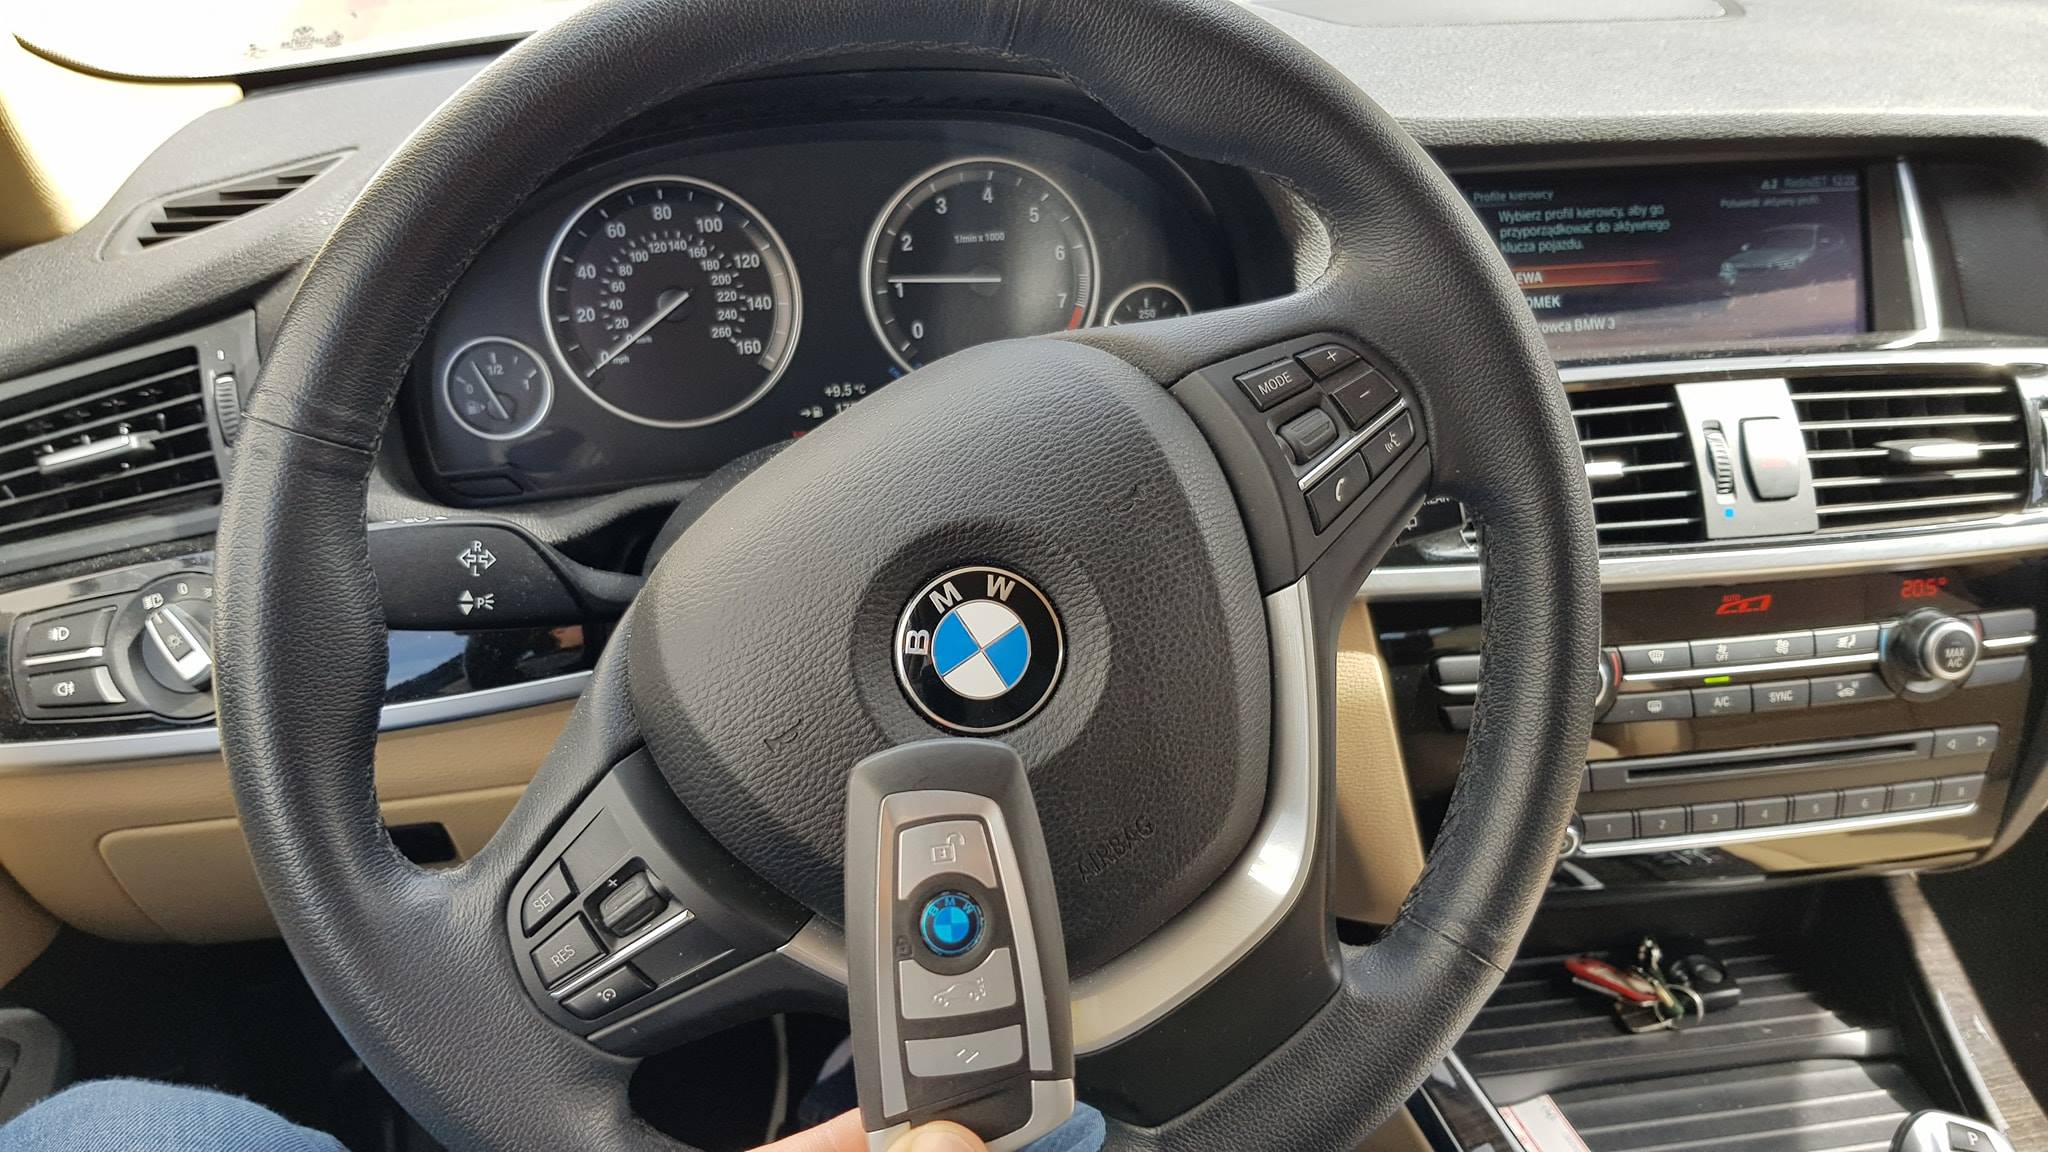 BMW X3 2016 USA DOROBIENIE KLUCZA